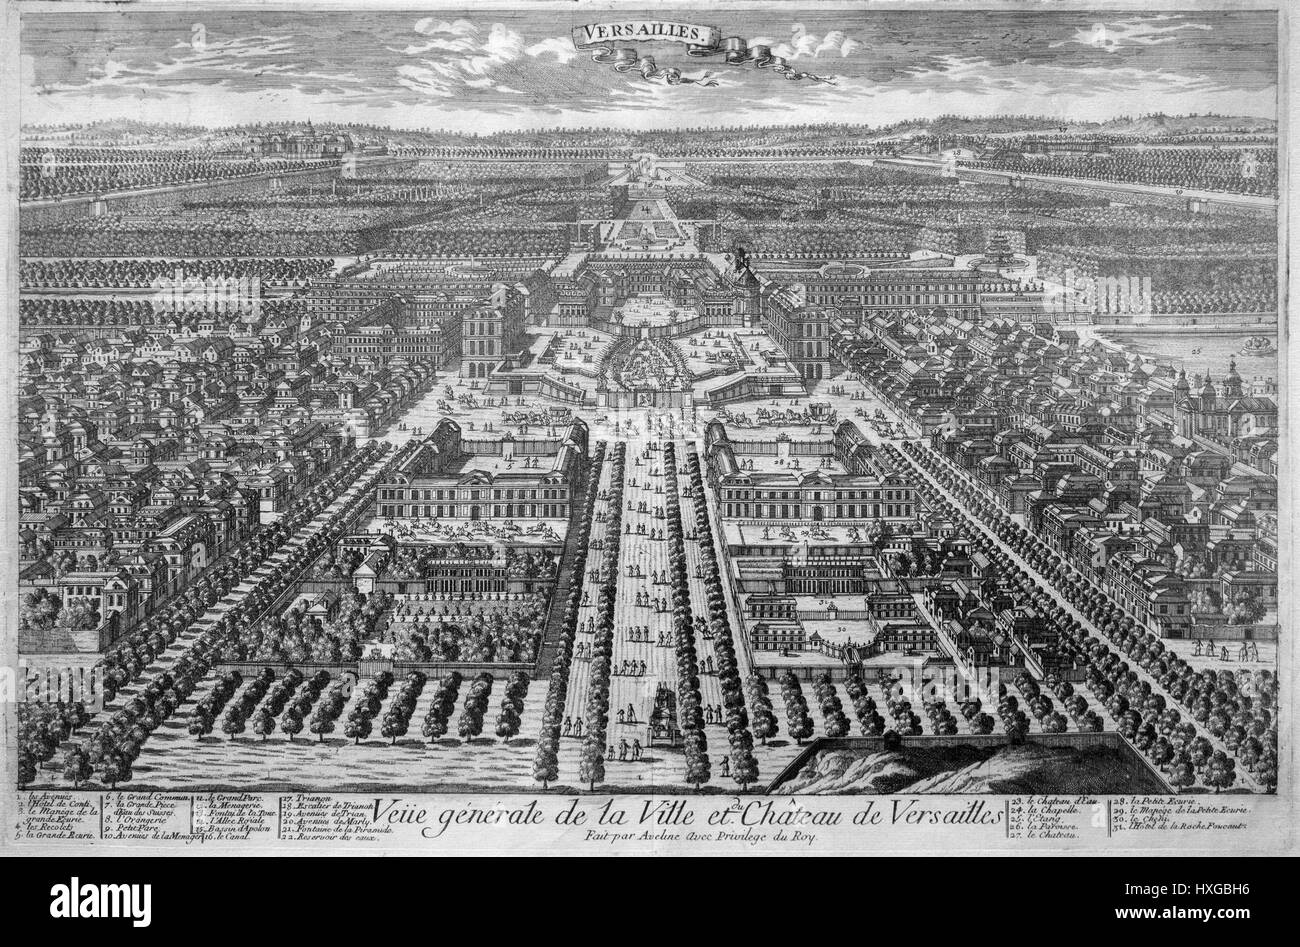 Versailles - la ville et le palais, France ca. 1700 Eau-forte et gravure sur cuivre. Banque D'Images